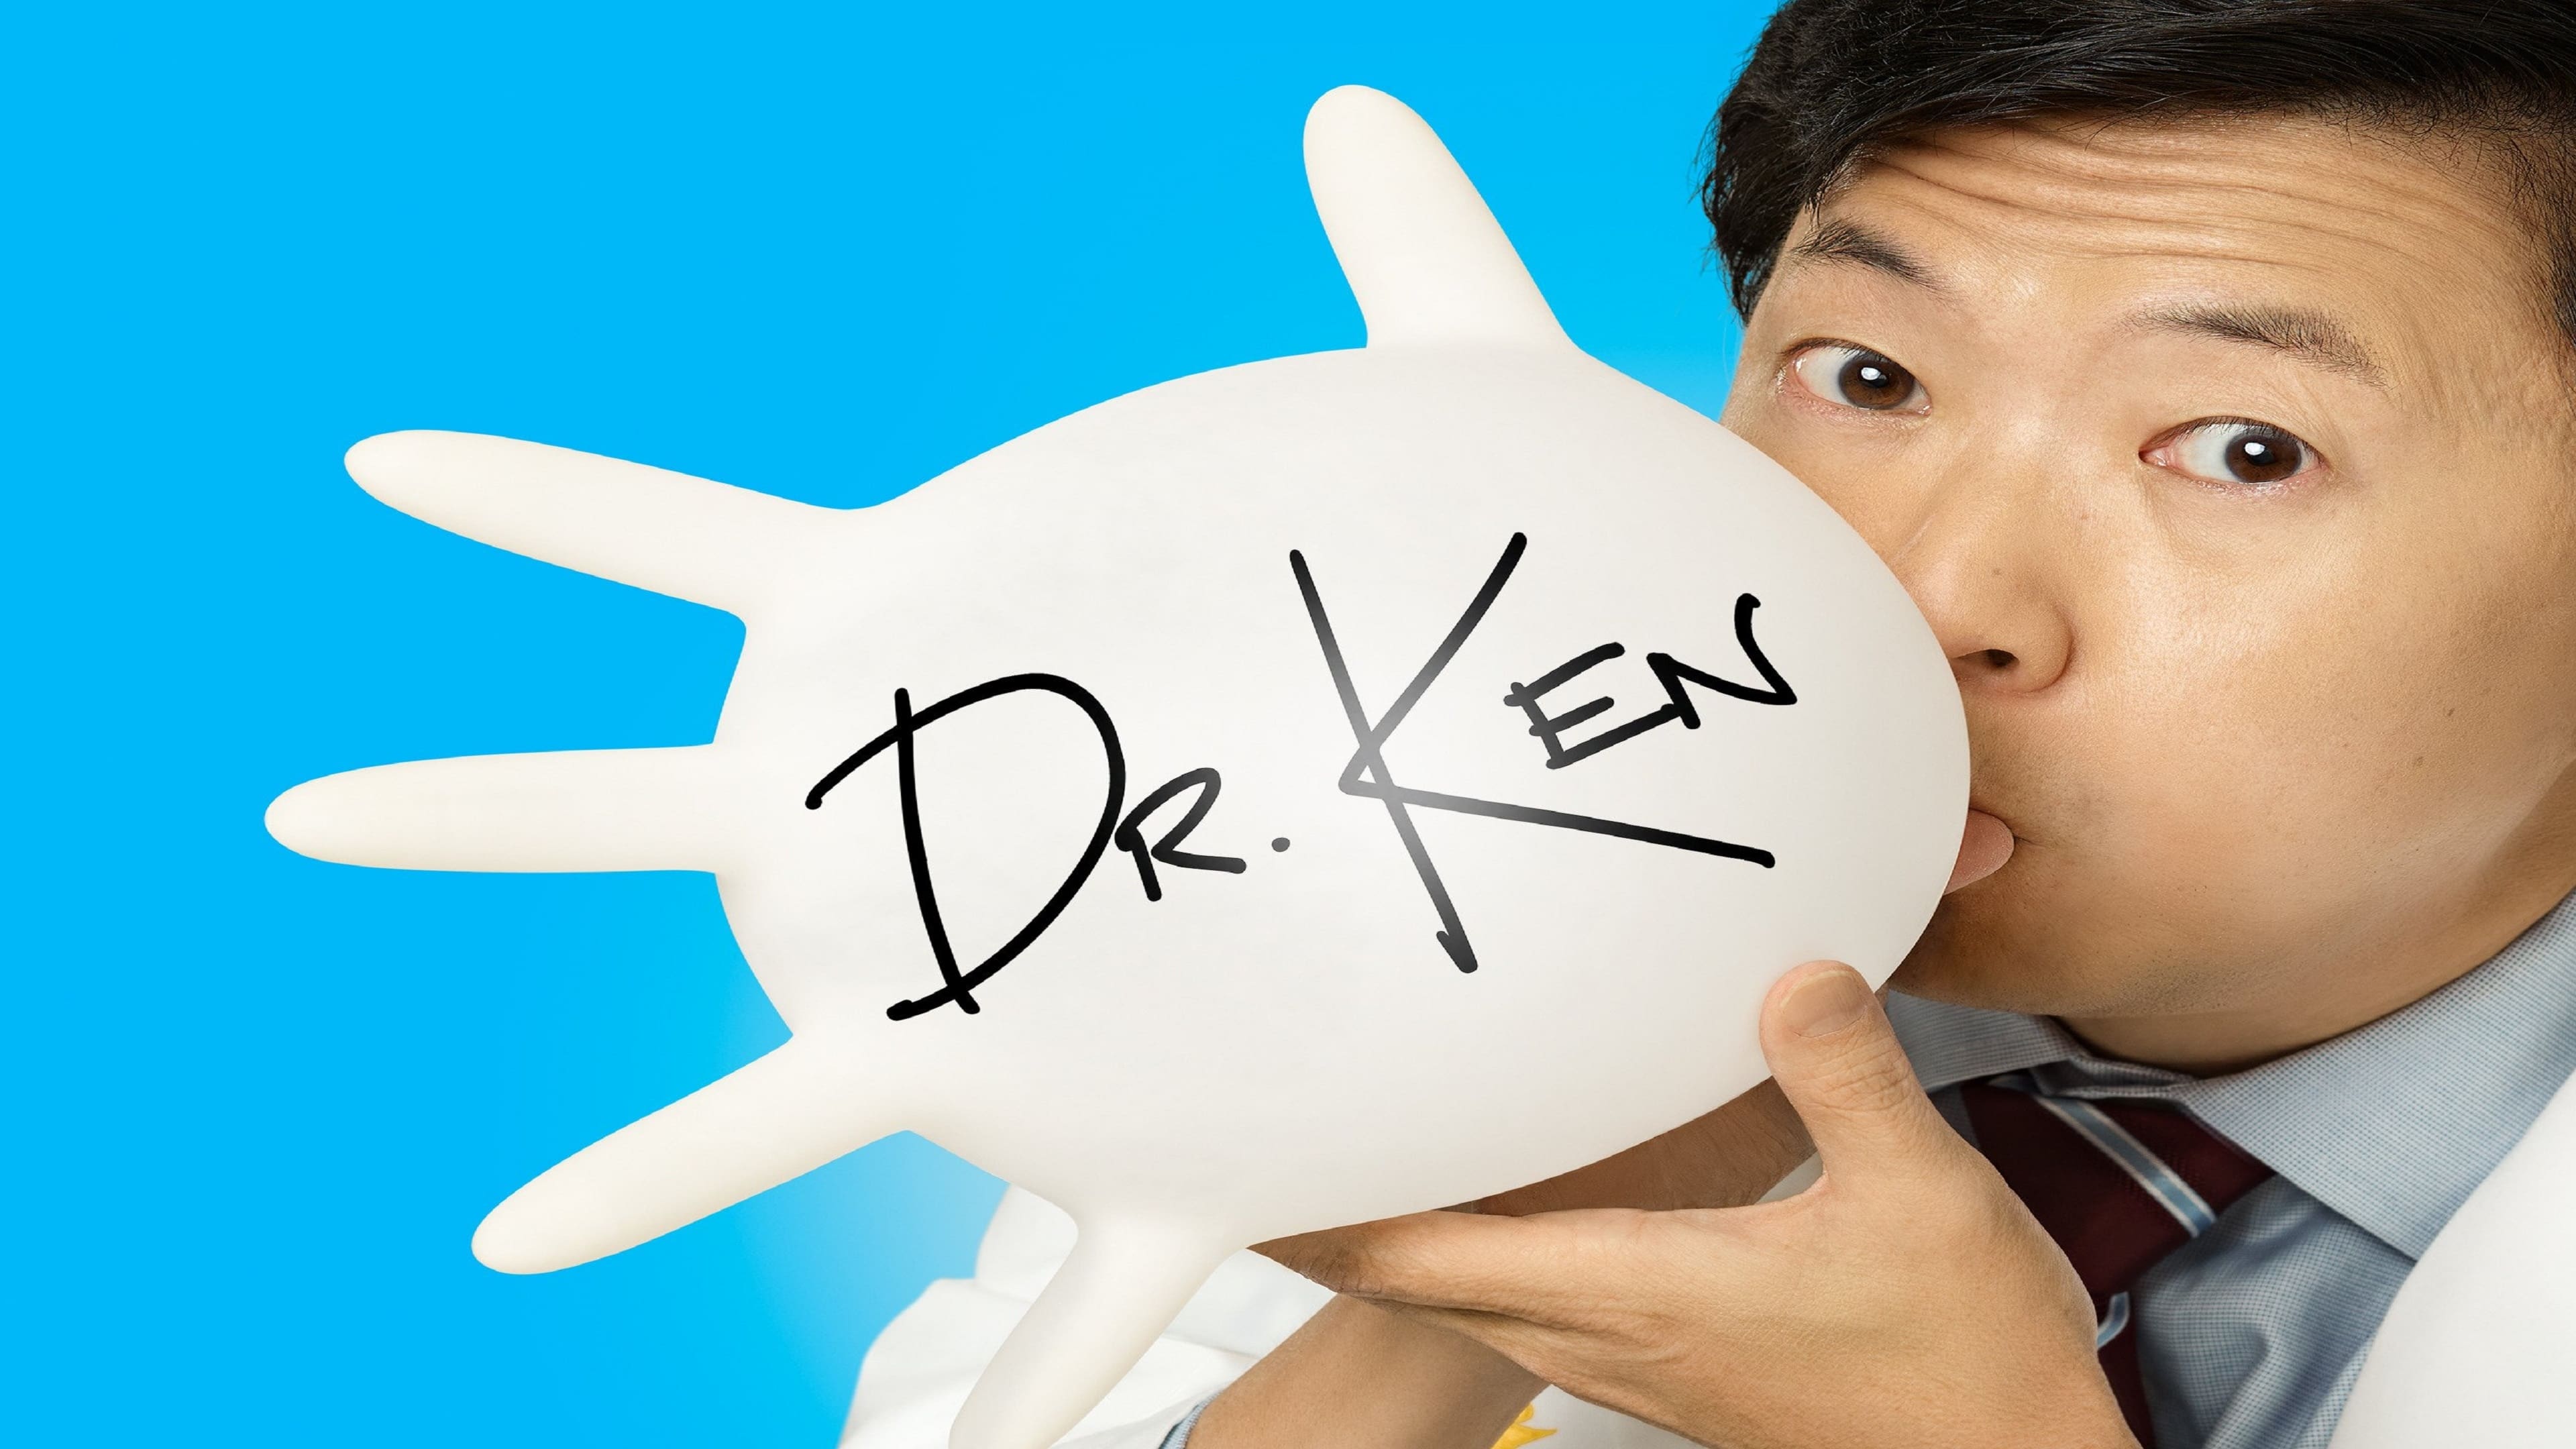 Dr. Ken - serie